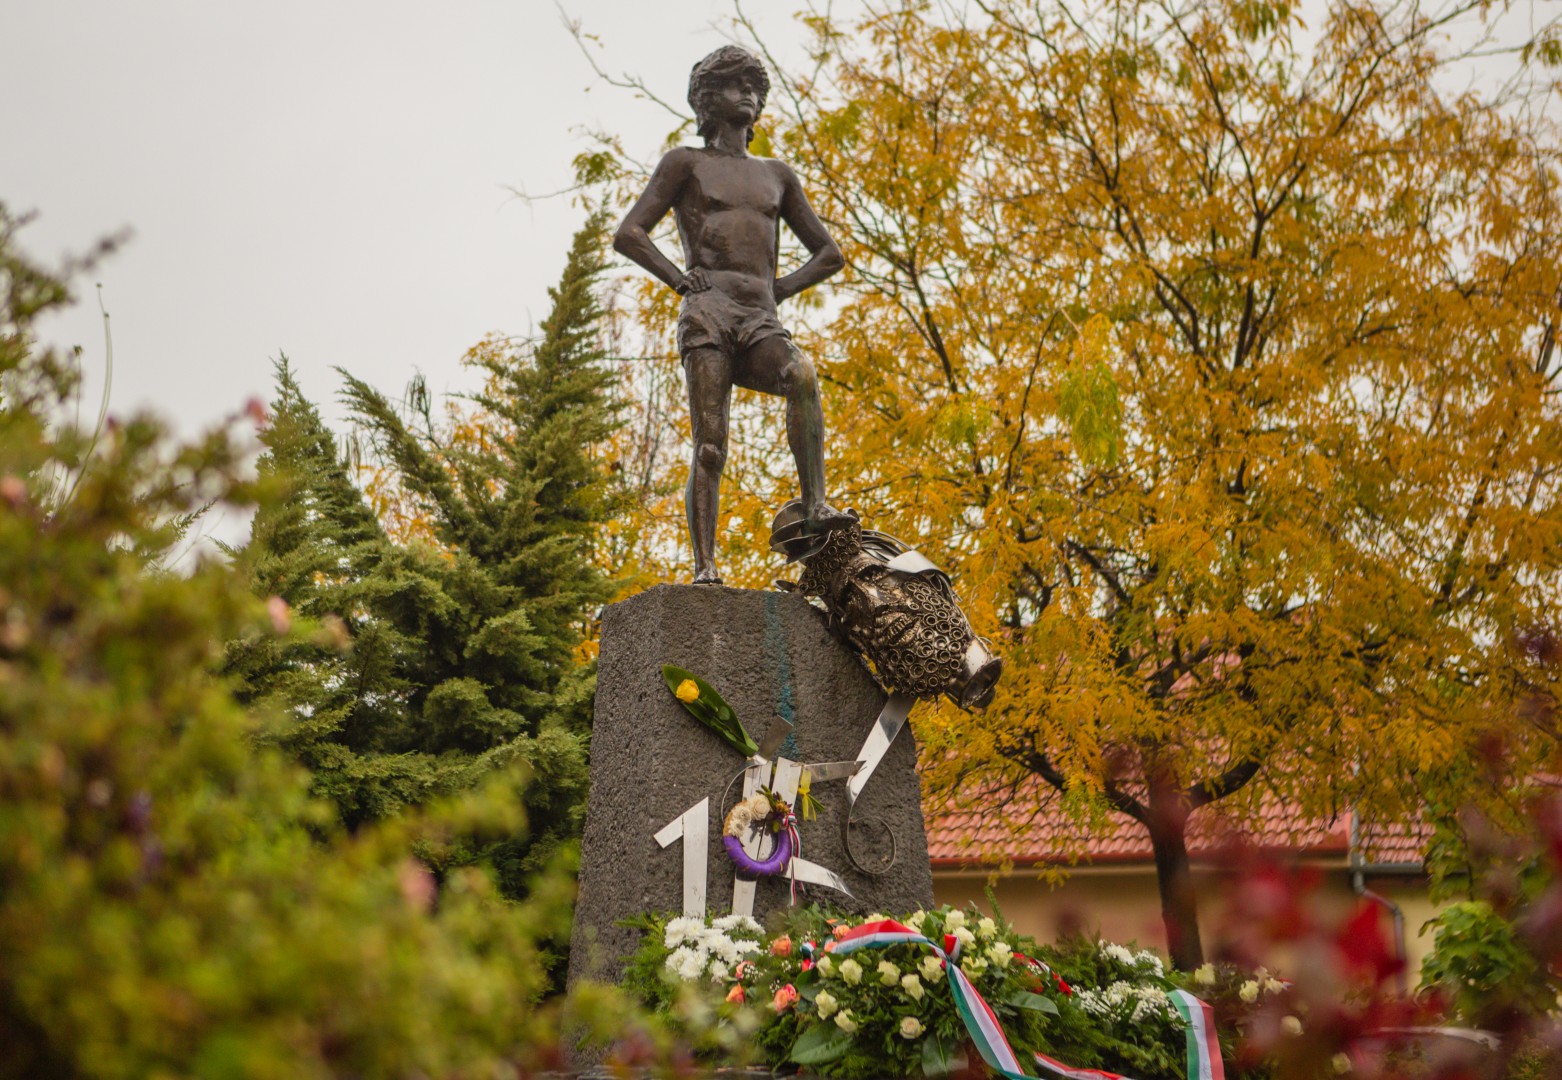 Dávid és Góliát -  Az 1956-os forradalom emlékműve (Losonczy Géza Emlékpark)